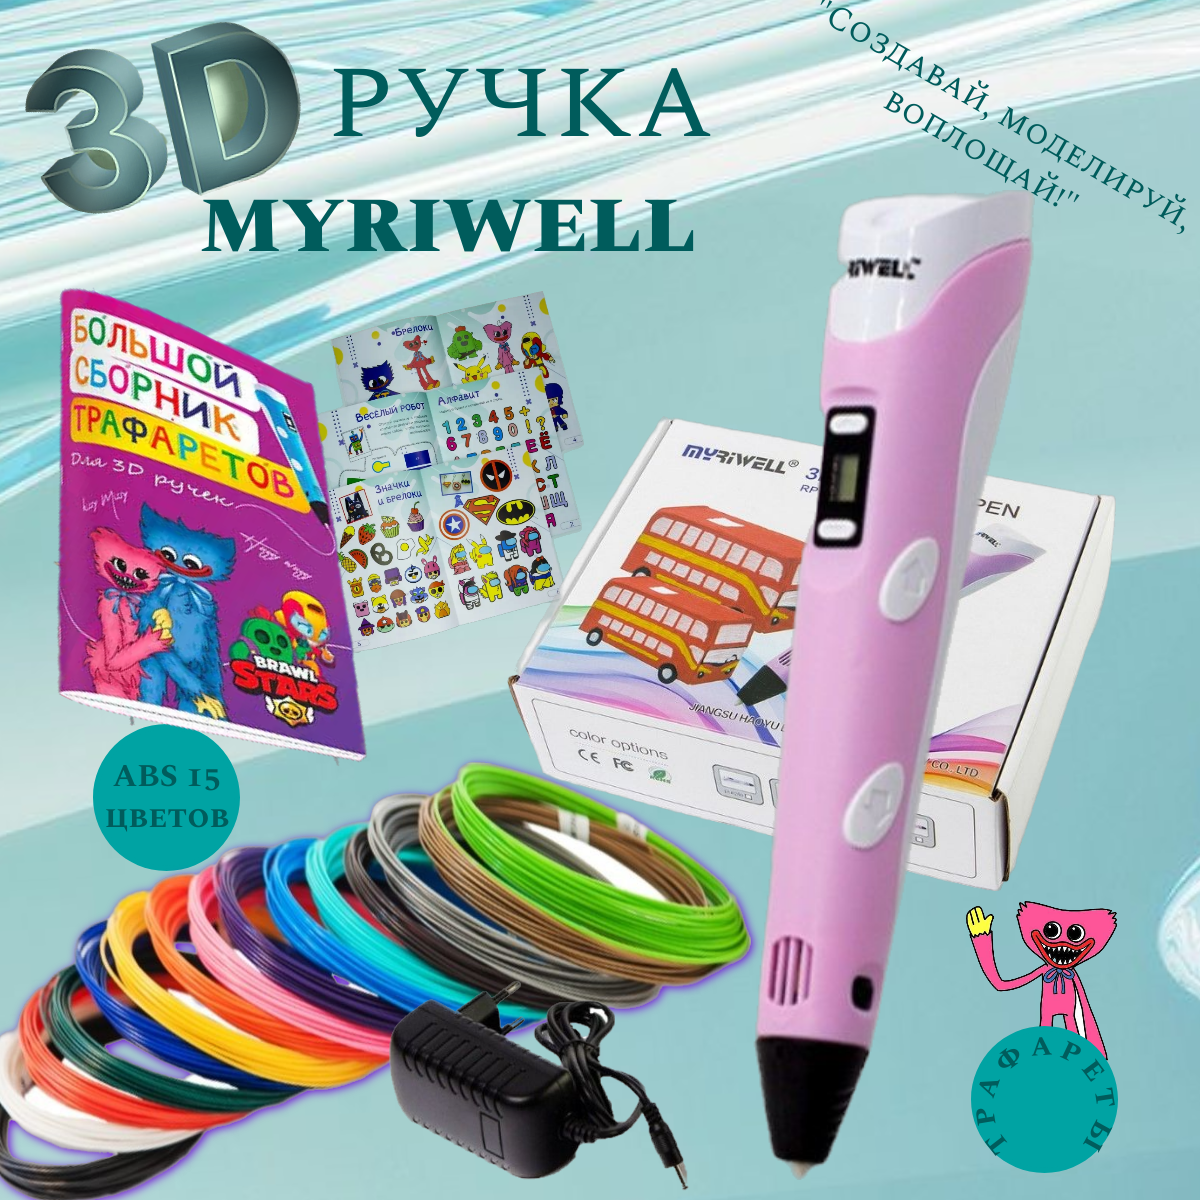 3D ручка MyRiwell с комплектом пластика ABS 150м/ Книжка с трафаретами/Прозрачный коврик/Цвет розовый.